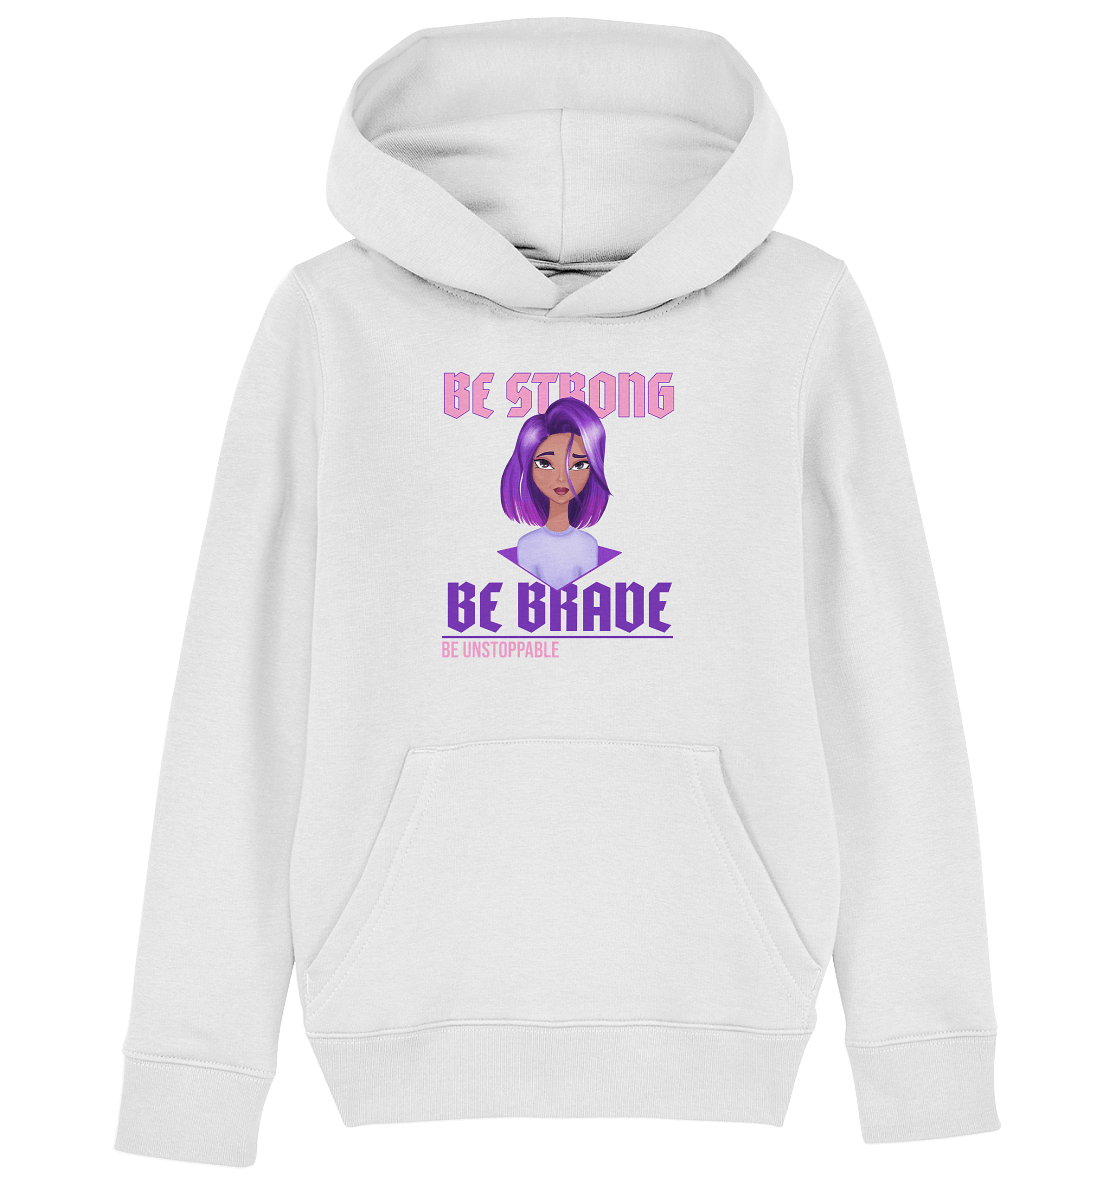  Mädchen Kapuzenpullover in weiß mit handgezeichneten Cartoon mit lila-violett Ombré Haarfarbe und Beschriftung "be strong be brave be unstoppable."